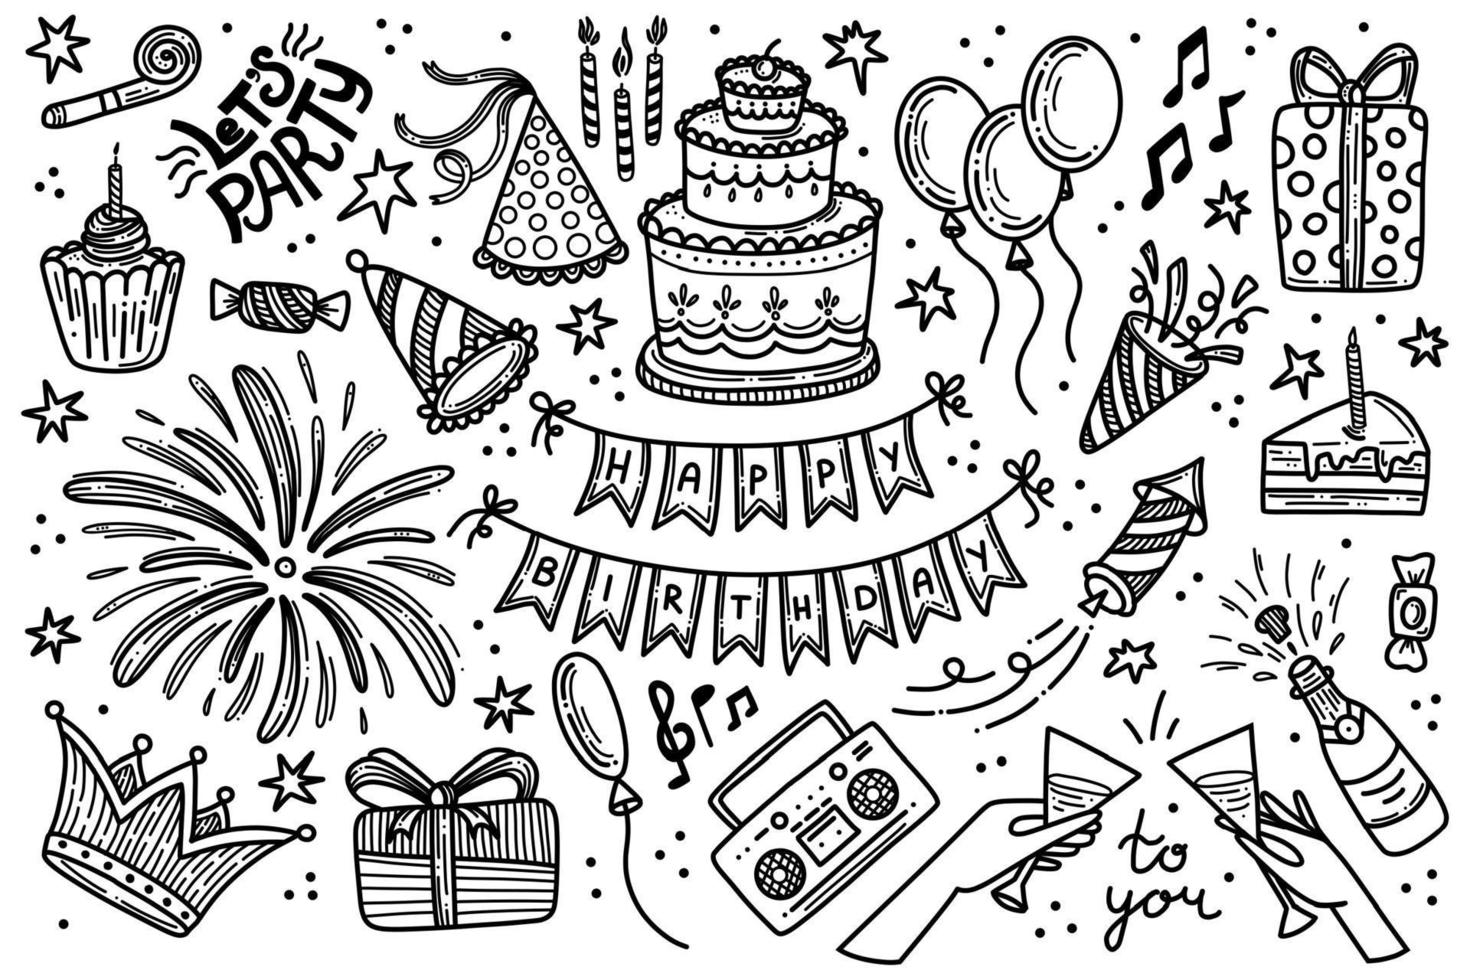 Party-Geburtstags-Doodle-Vektor-Set. alles gute zum geburtstag feier handgezeichnete clipart große sammlung. Dekorationsobjekte zum Jubiläum vektor